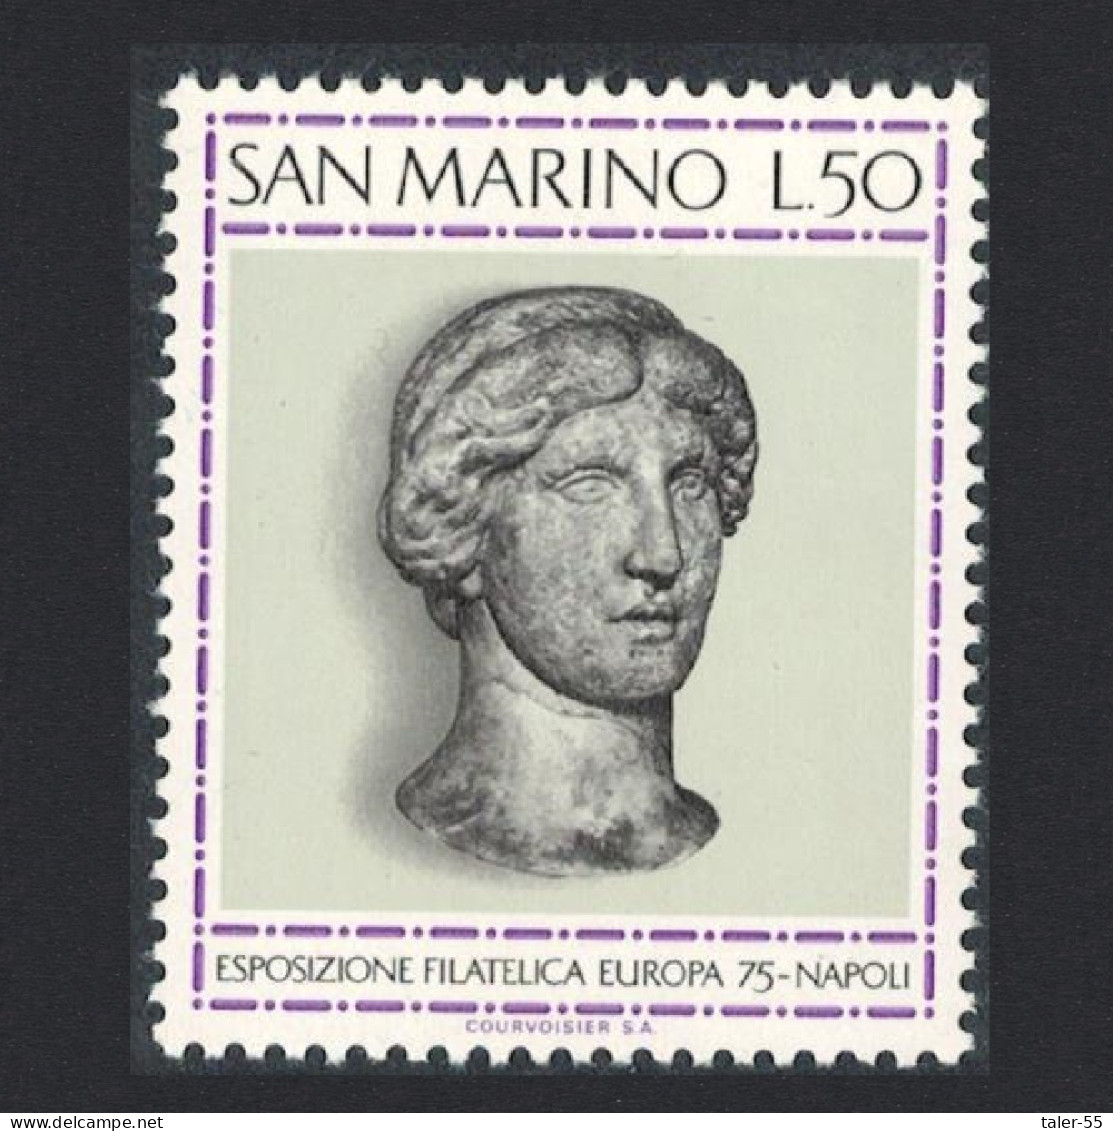 San Marino 15th Europa Stamp Exhibition Naples 1975 MNH SG#1030 - Ongebruikt